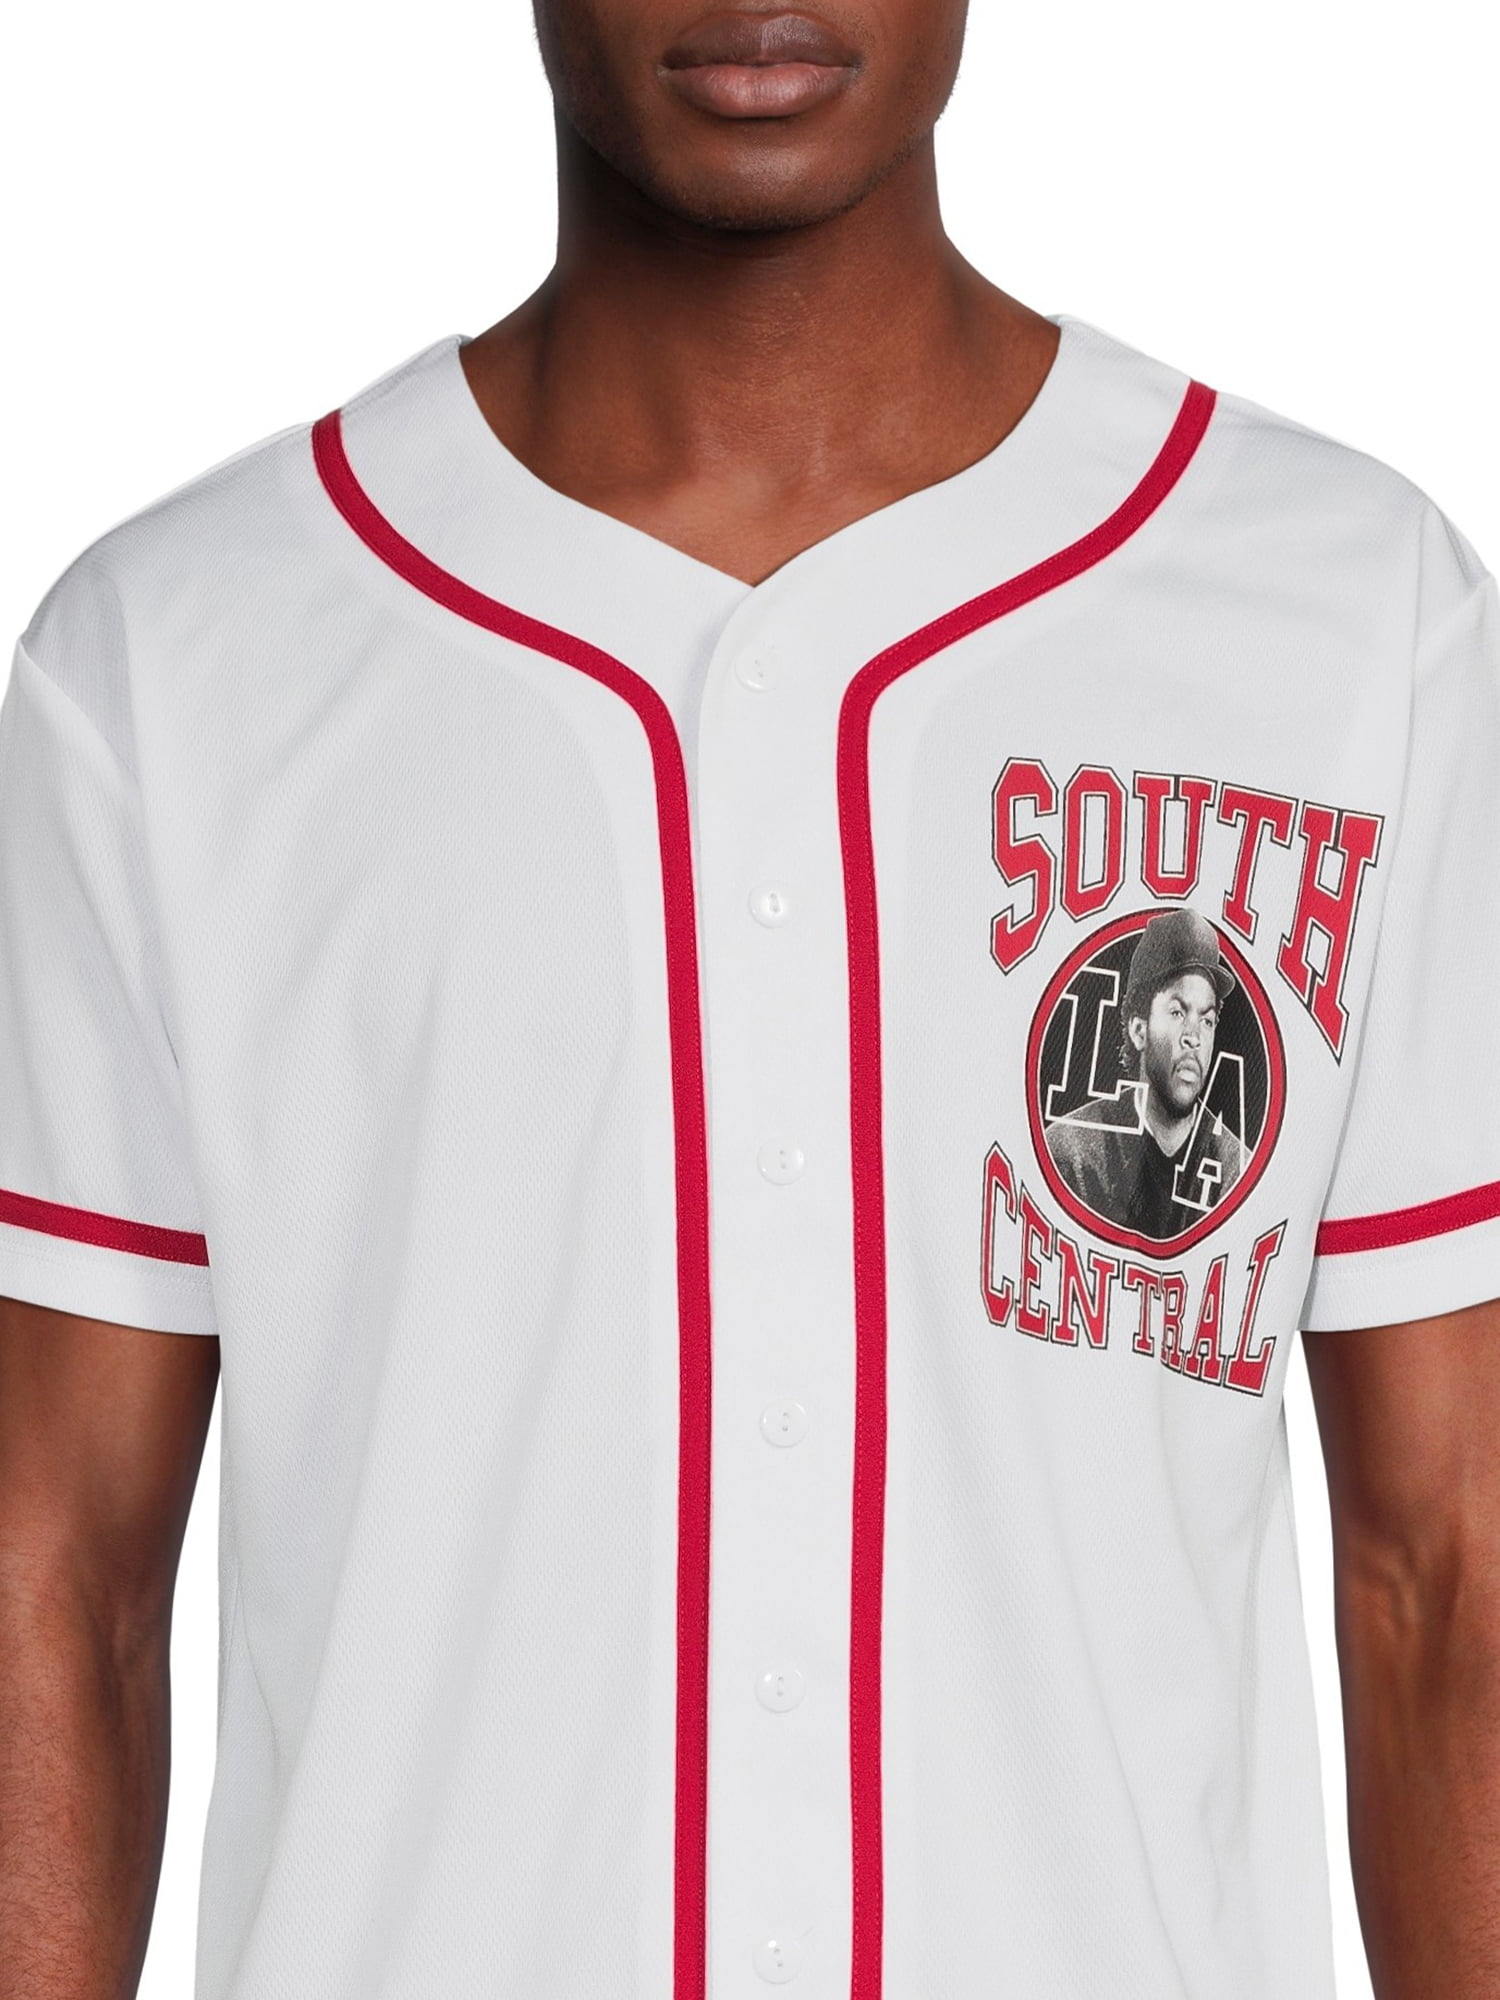 Boyz N The Hood Men's Baseball Jersey, Sizes S-2xl, Size: Large, White